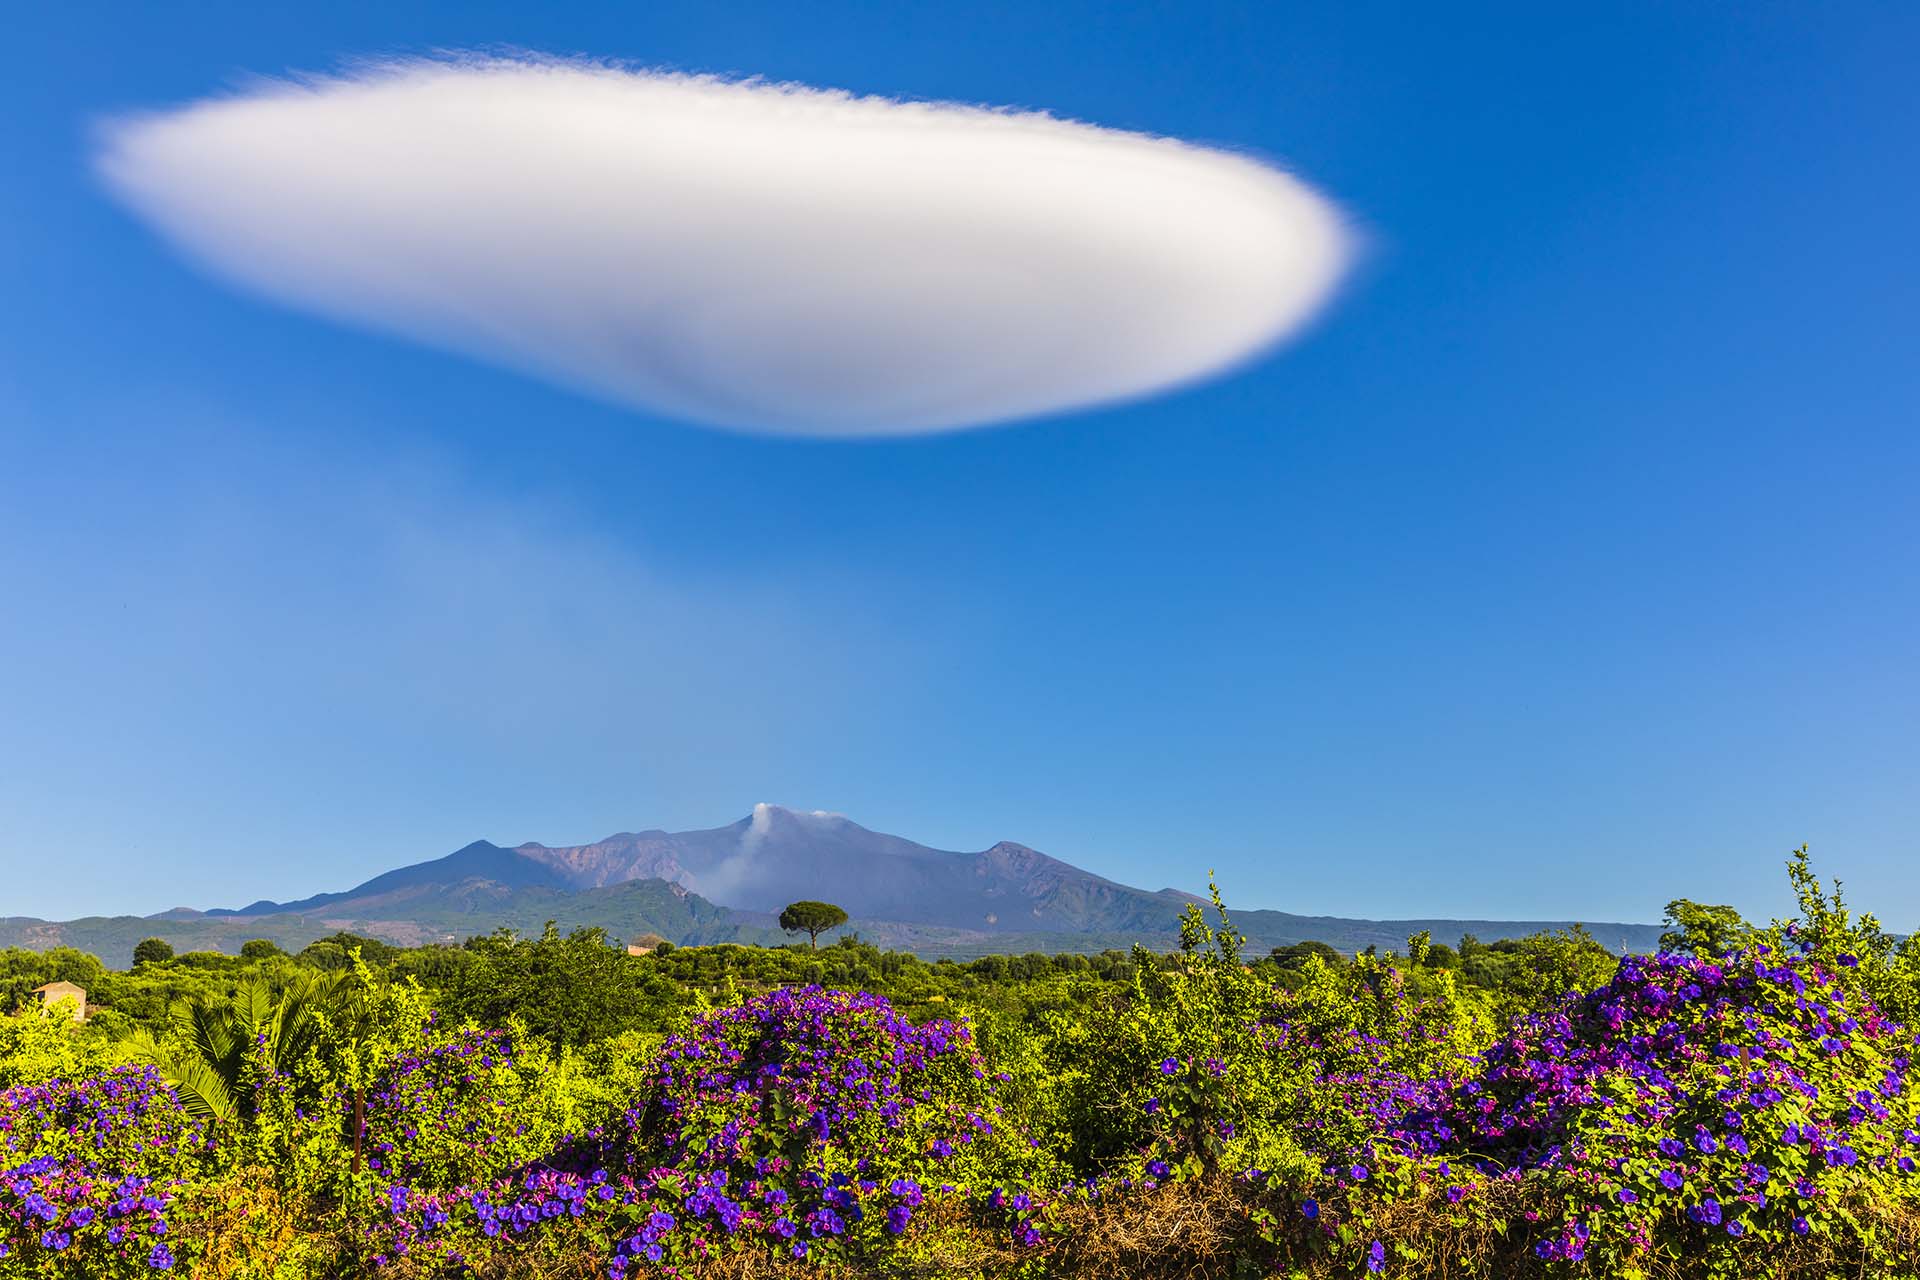 Nuvola lenticolare chiamata a Cunttissa dell'Etna